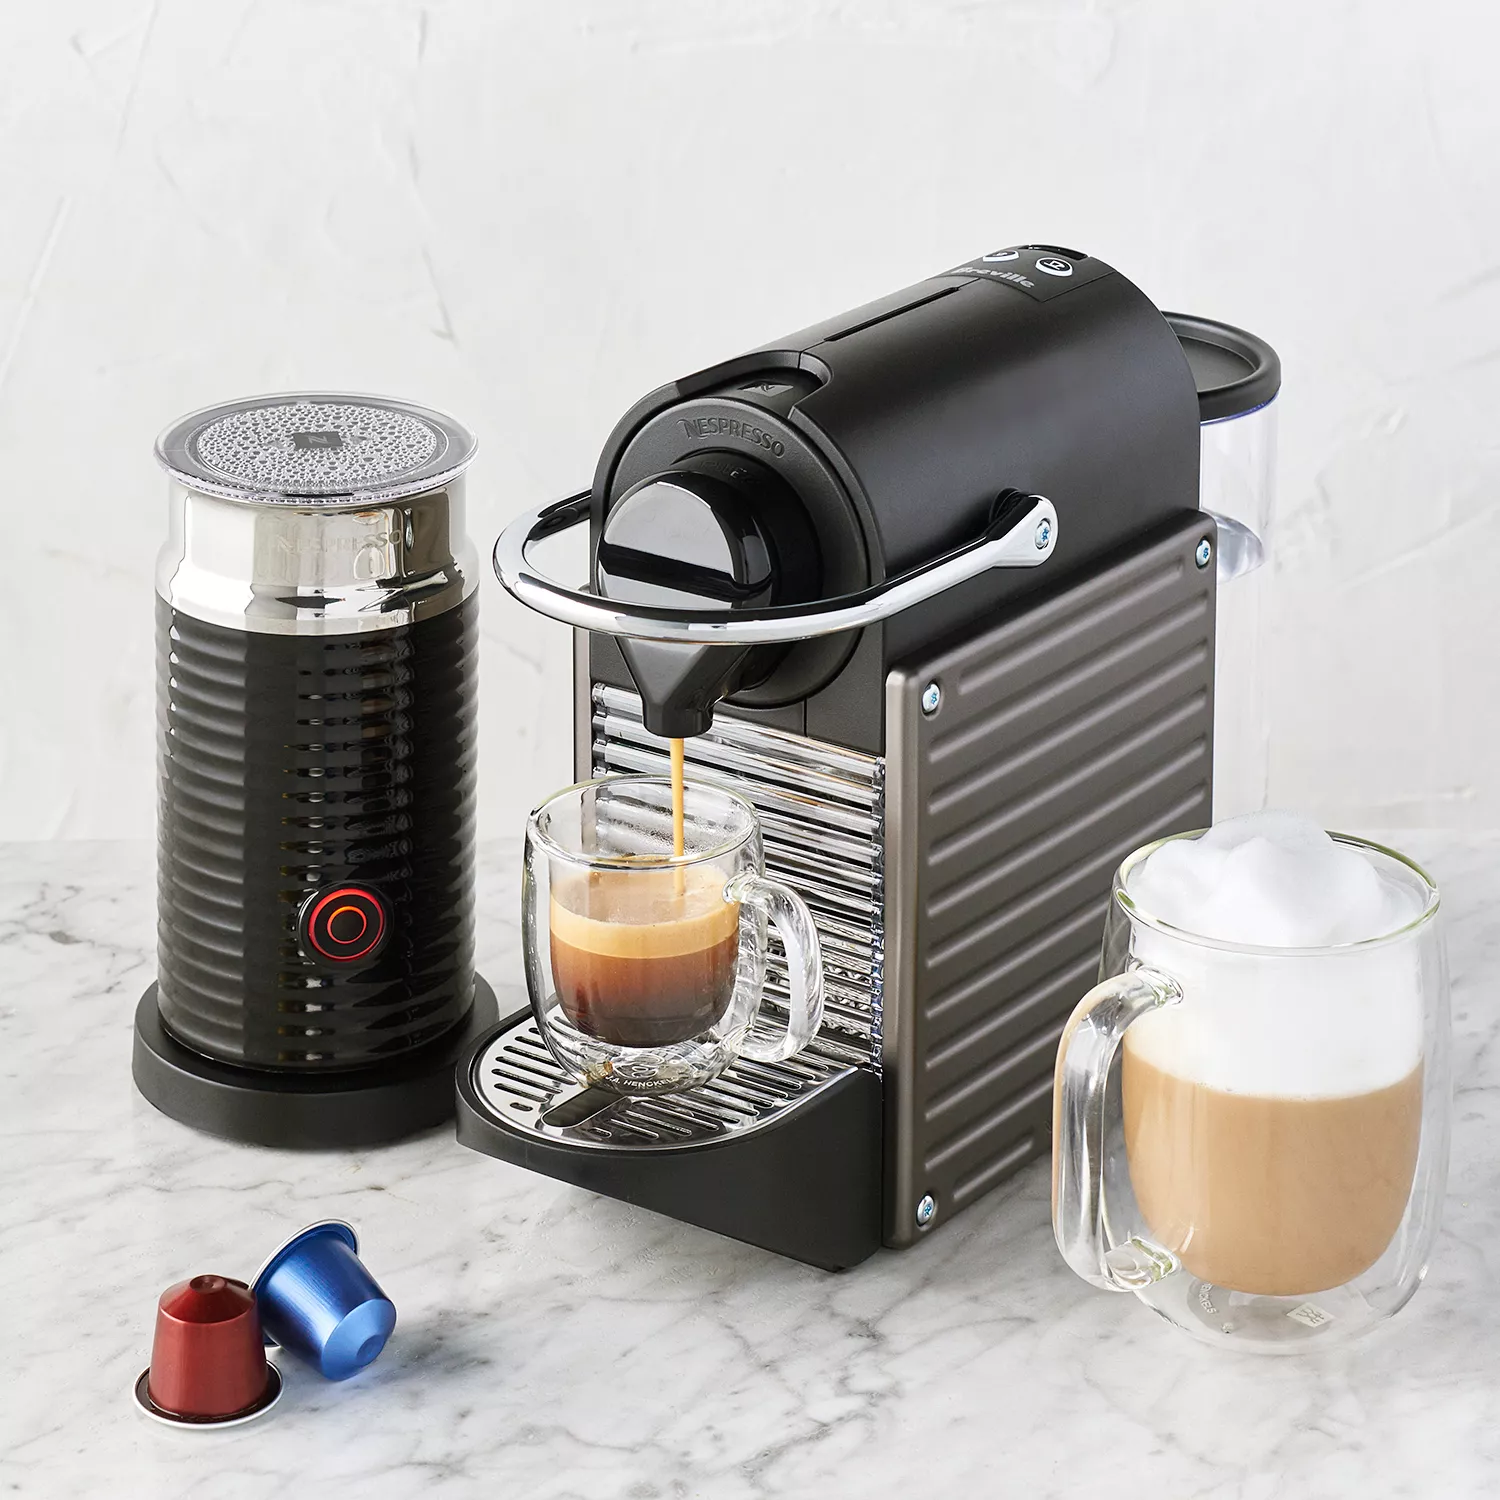 Nespresso Pixie Espresso Machine by DeLonghi with Aeroccino